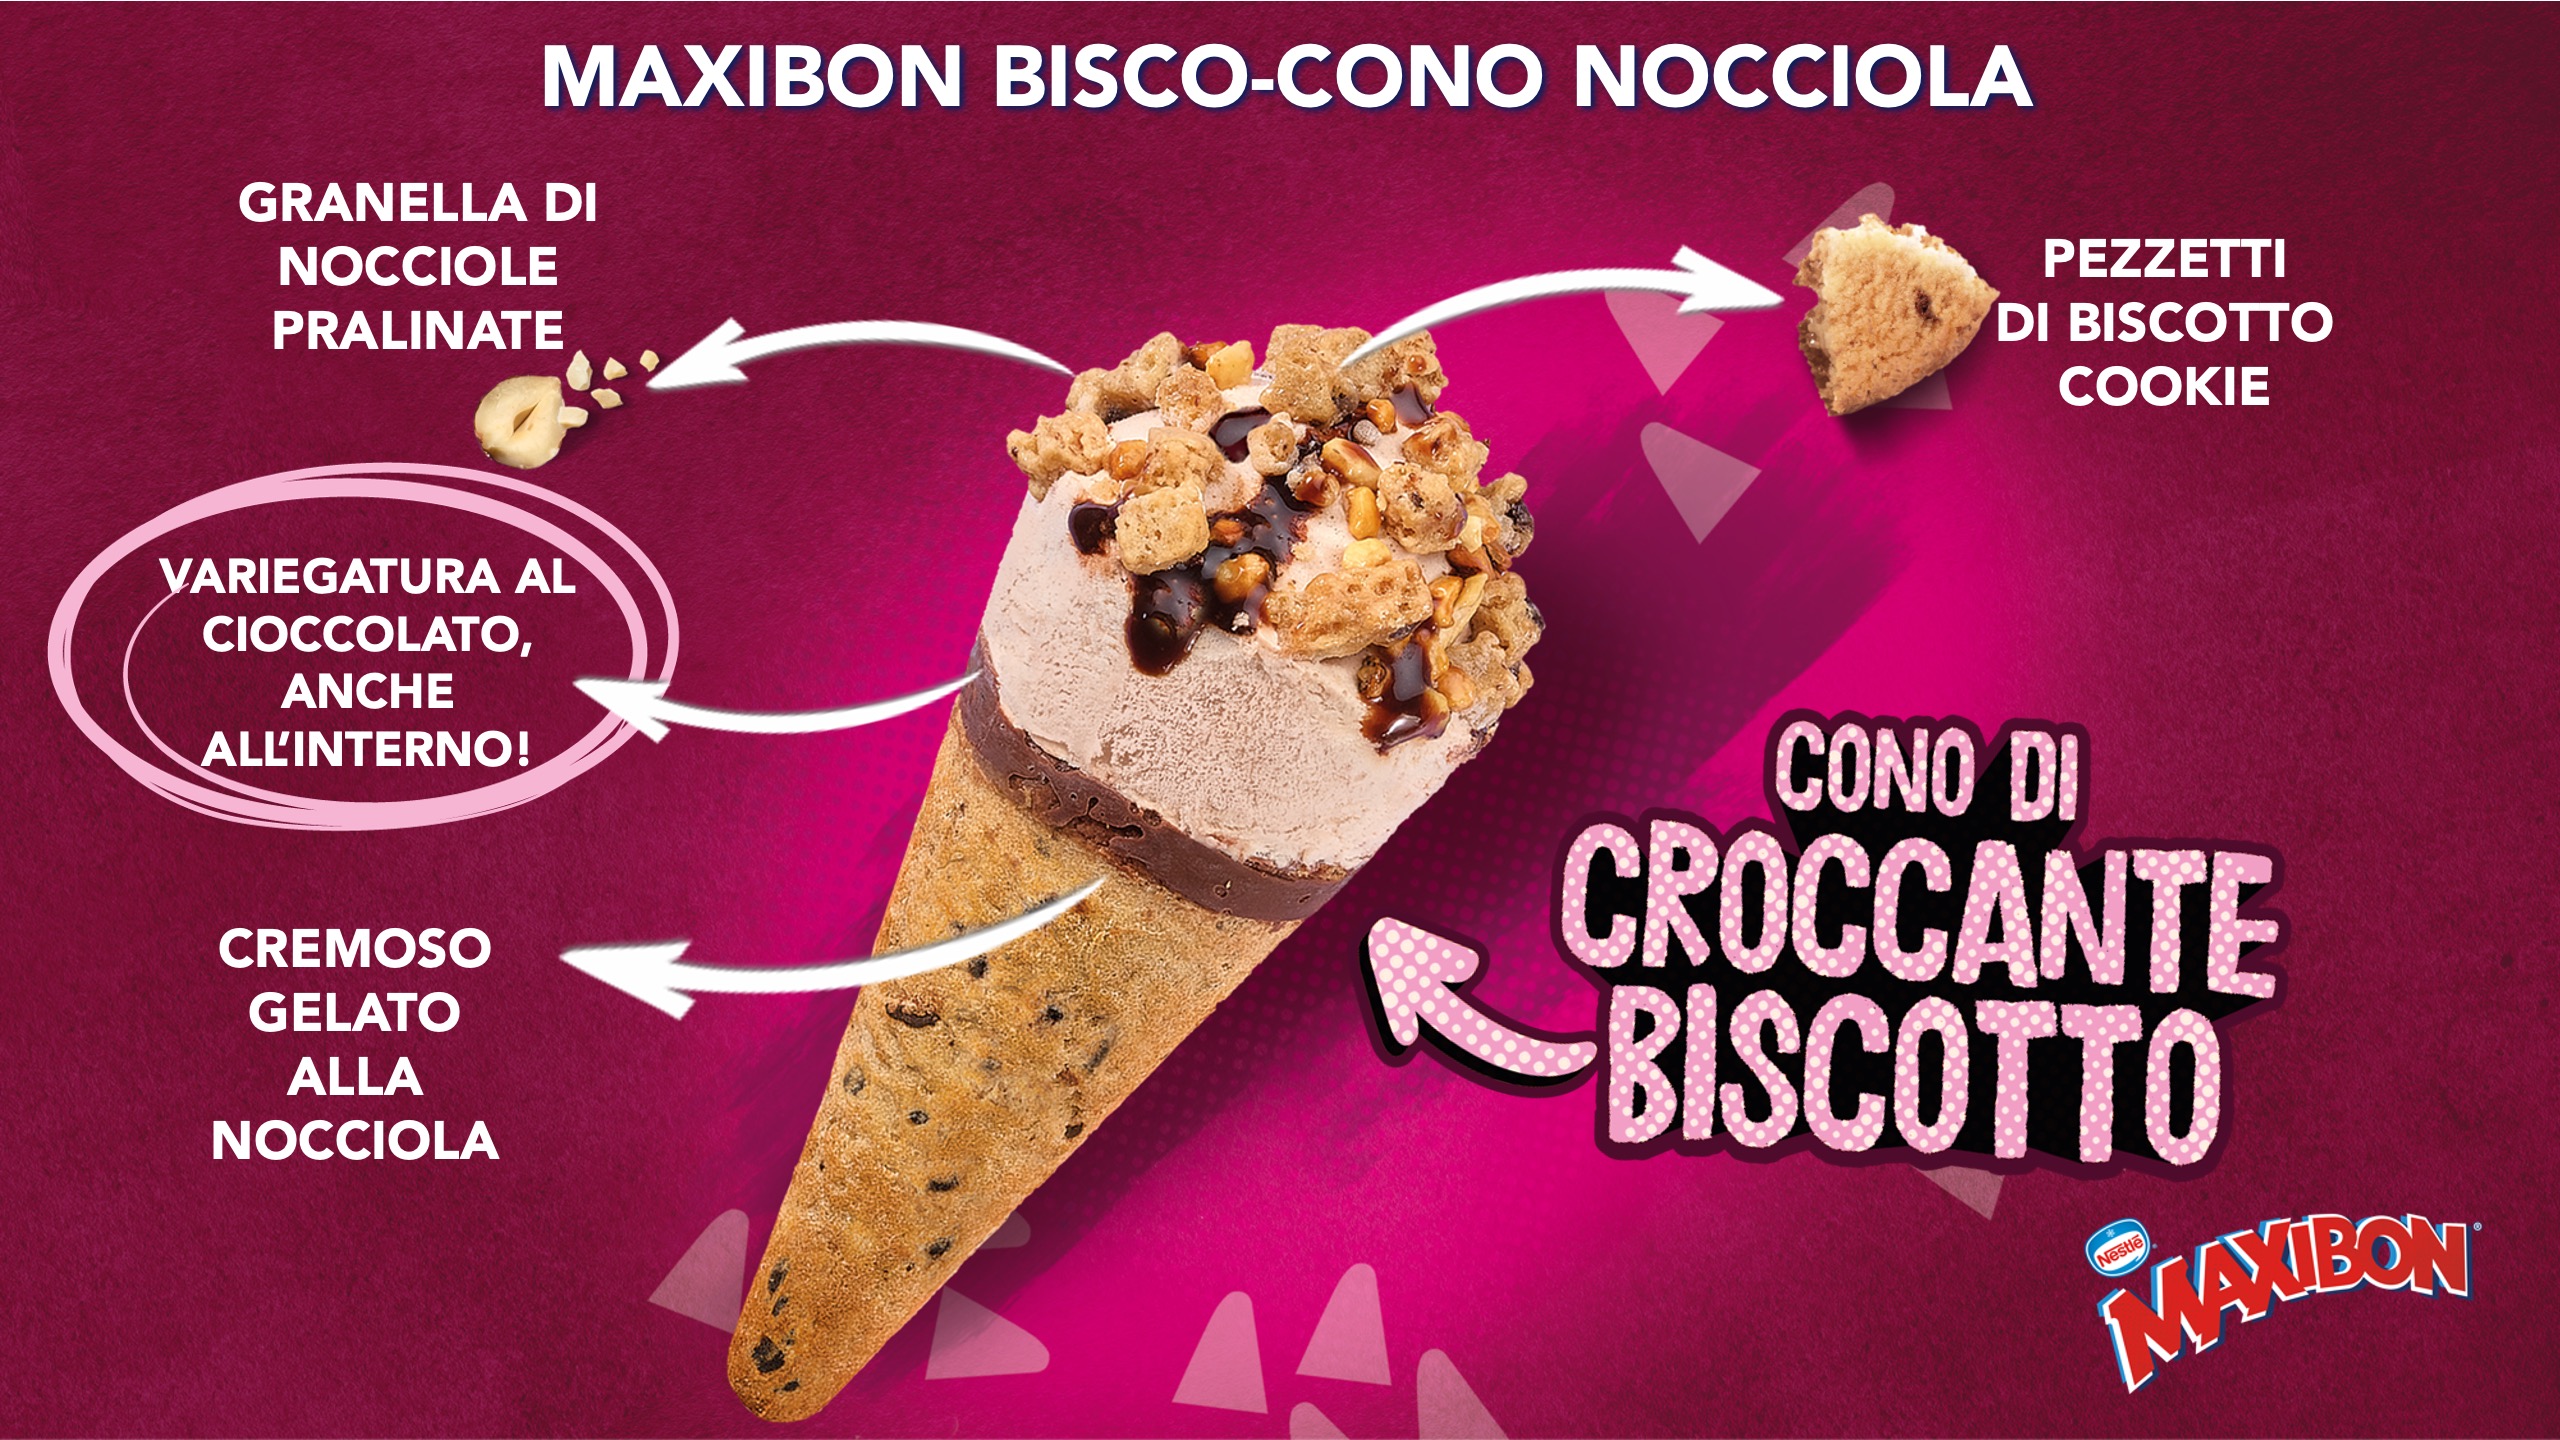 Froneri Piani Marketing 2023 Maxibon bisco-cono nocciola